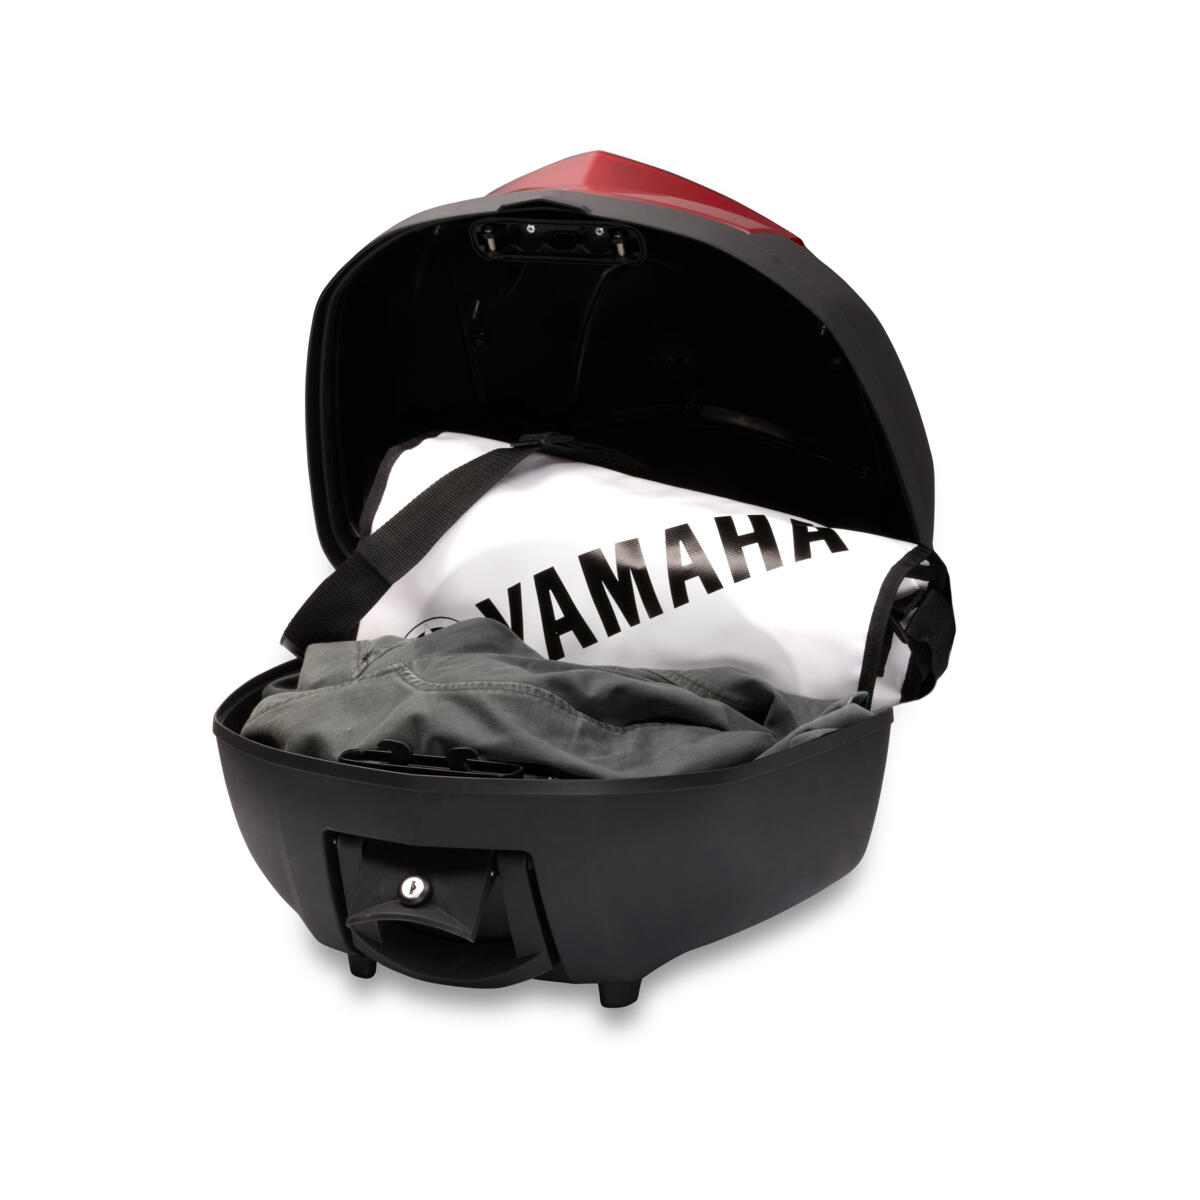 Качествен горен багажник за допълнително място за багаж/съхранение върху вашата Yamaha.